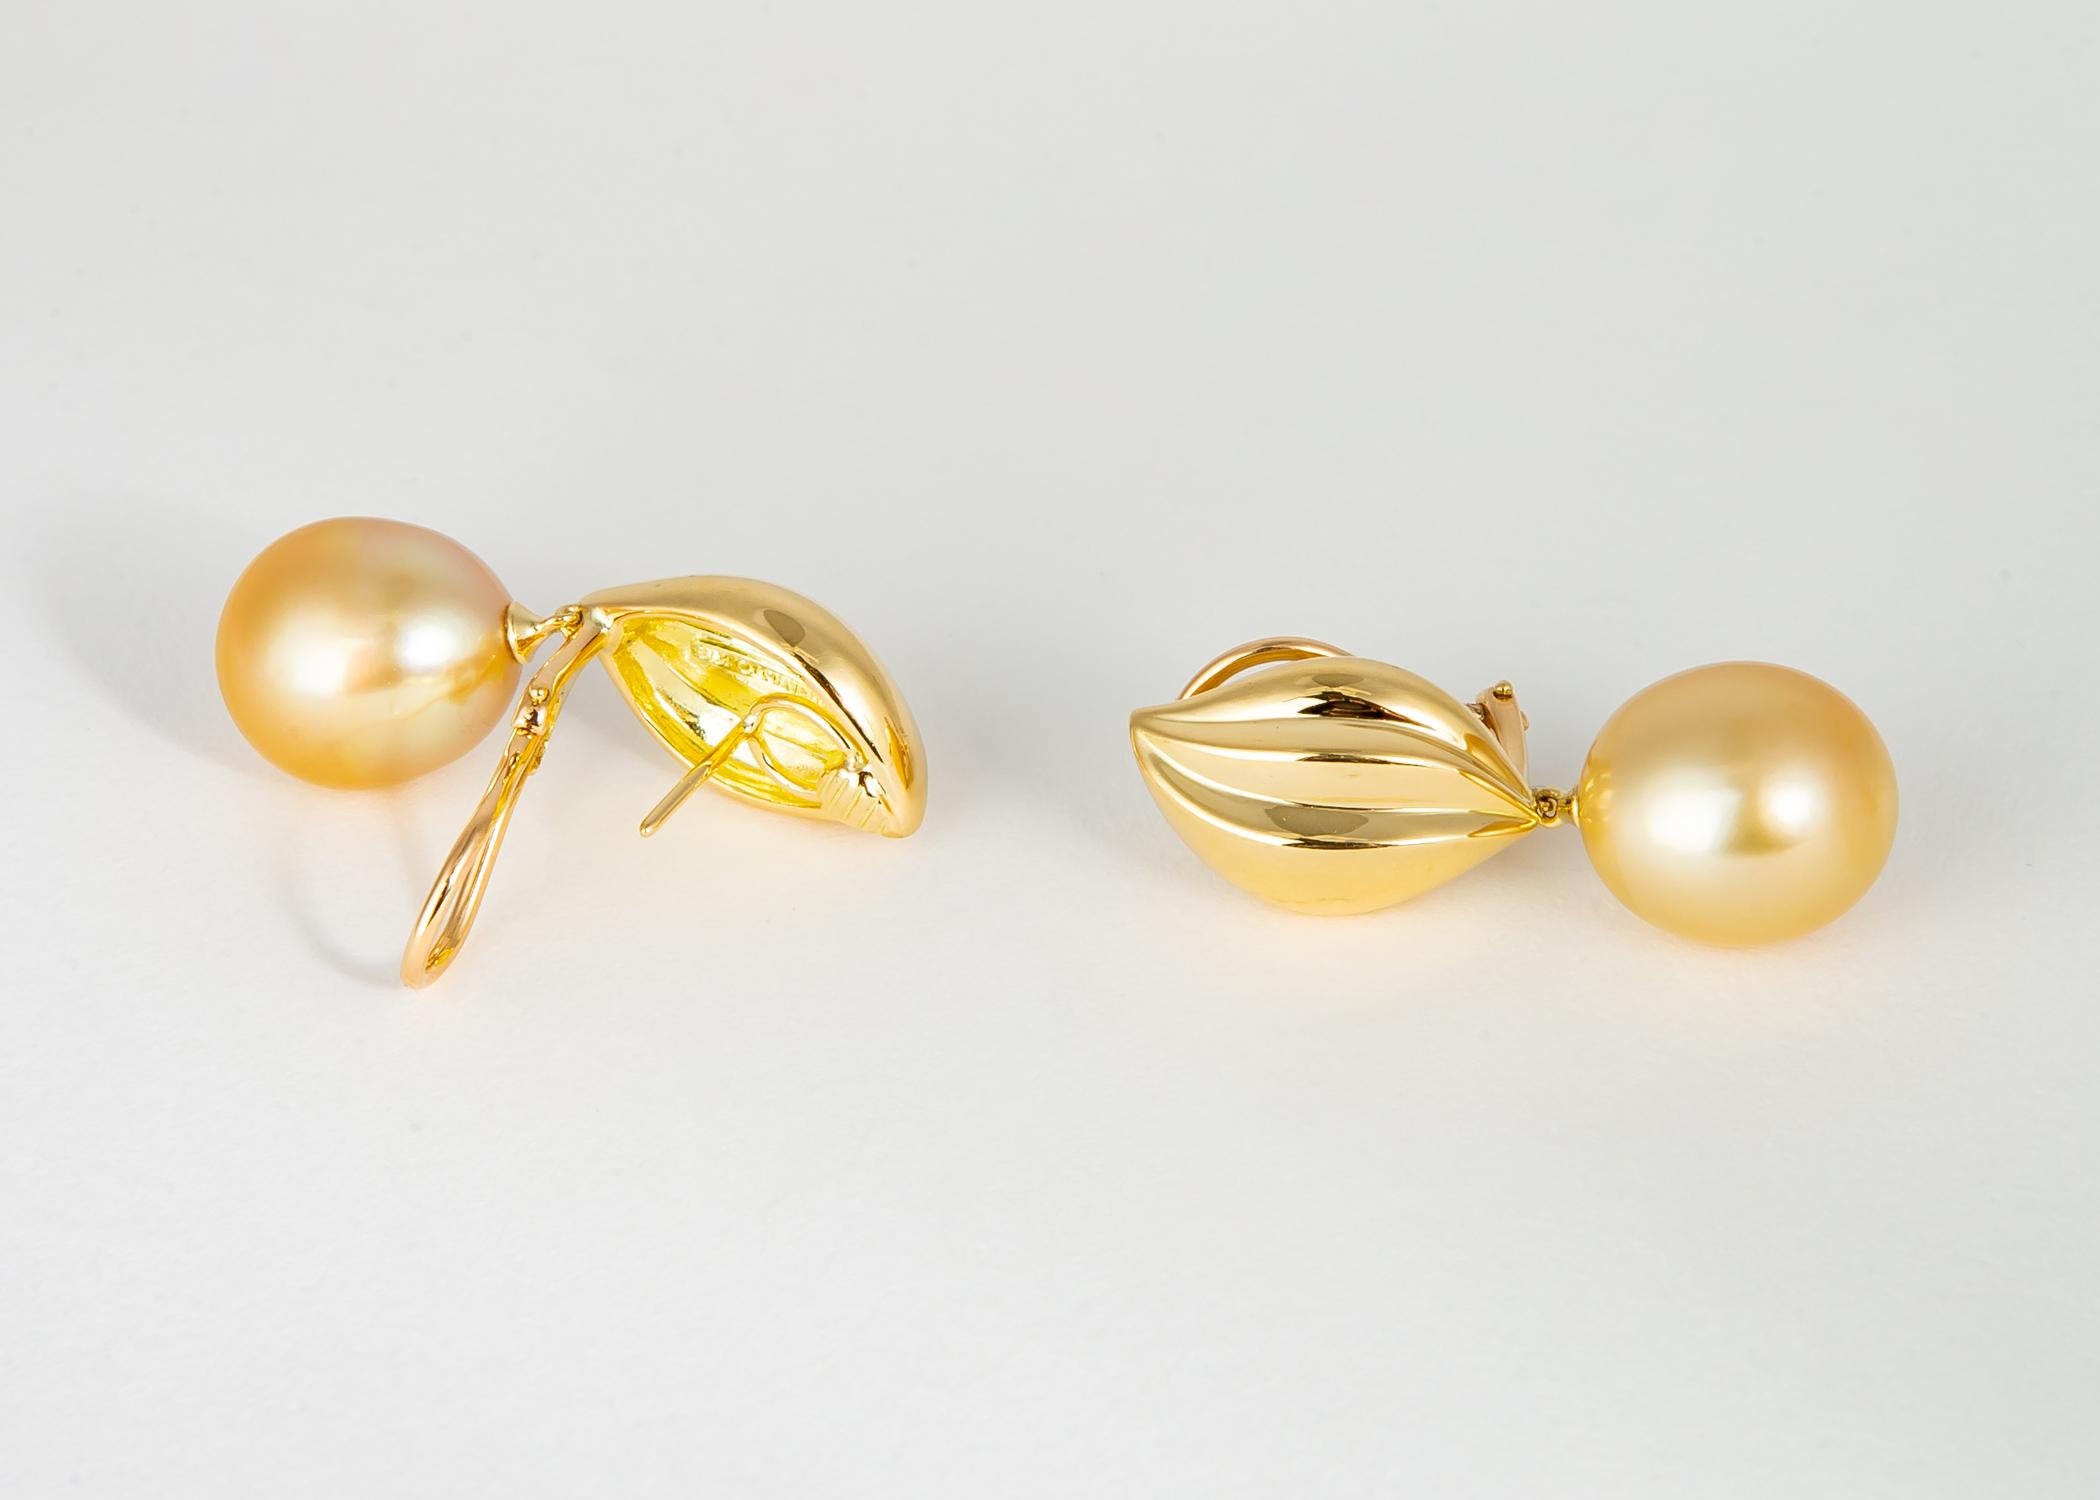 Mikimoto offre un dévouement inébranlable aux bijoux en perles de qualité. Cette magnifique paire assortie de riches perles de mer du Sud dorées (14,6 x 12,9 mm) est suspendue à d'élégantes toupies en or 18 carats. Simplement chic ! !! 1 1/3 pouces